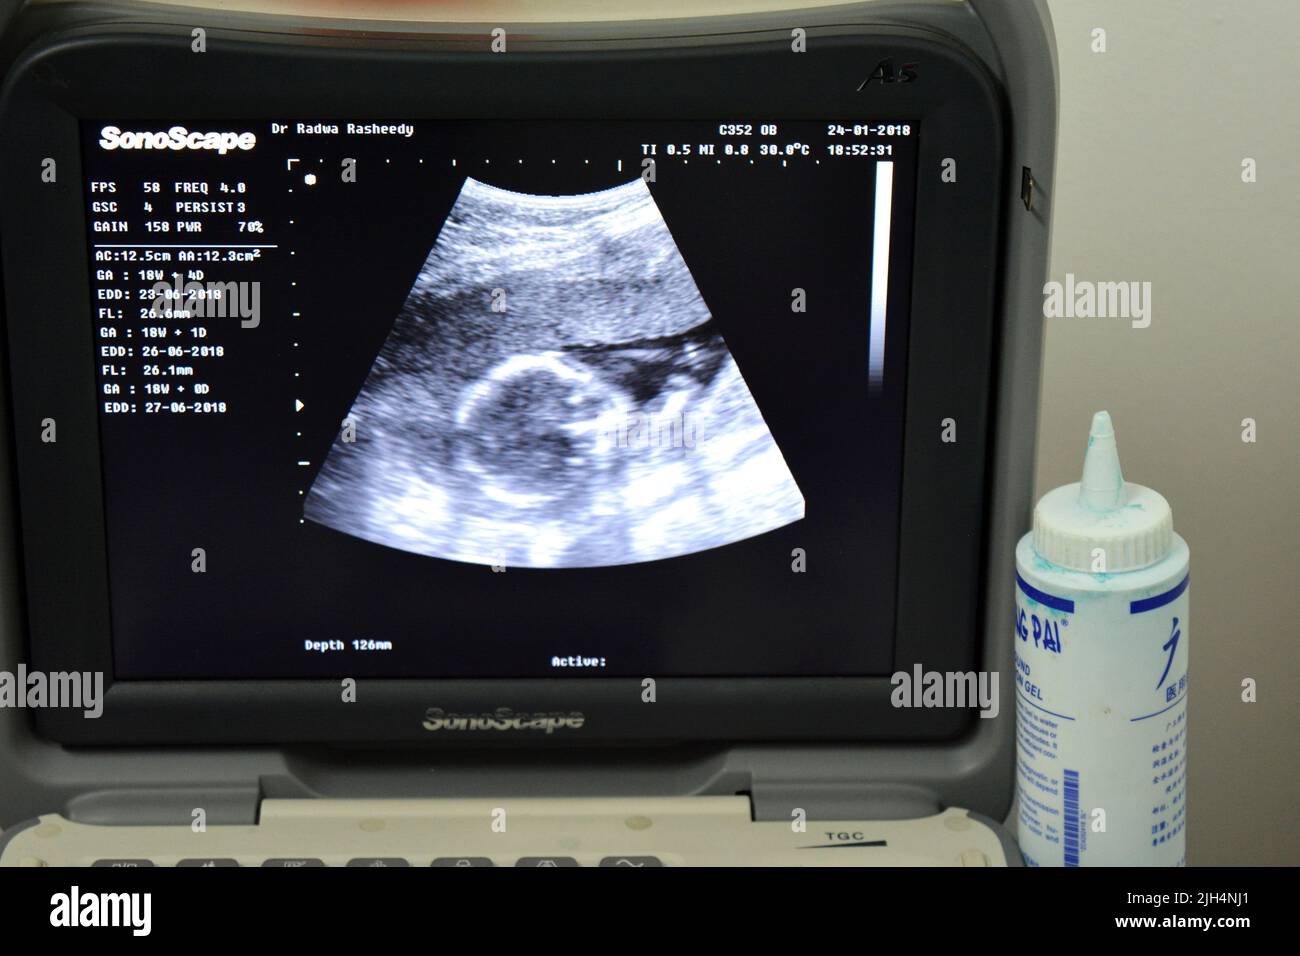 Cairo, Egitto, gennaio 24 2018: Un monitor di un'ecografia portatile che mostra la testa di un feto con un GA di età gestazionale 18 settimane e 4 giorni di durata Foto Stock